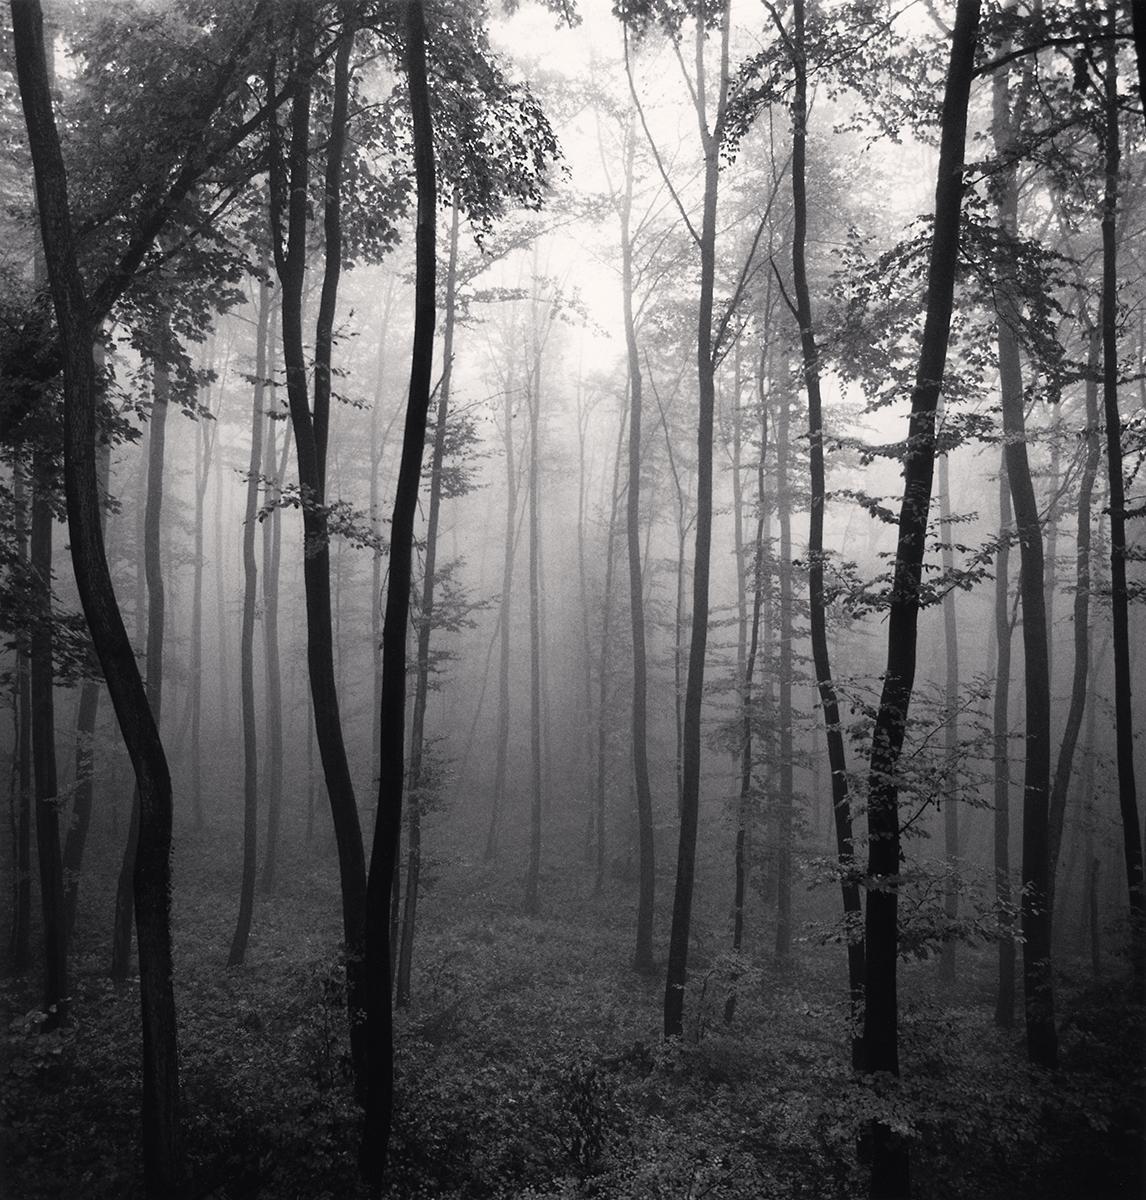 Jura Forest, Dornach, Schweiz von Michael Kenna zeigt eine dramatische Waldszene. Der dichte Wald verschwindet im Hintergrund, der Nebel umhüllt die Bäume. Die dunklen Bäume rahmen einen Weg ein, der weiter in die Landschaft hineinführt. 

Jura